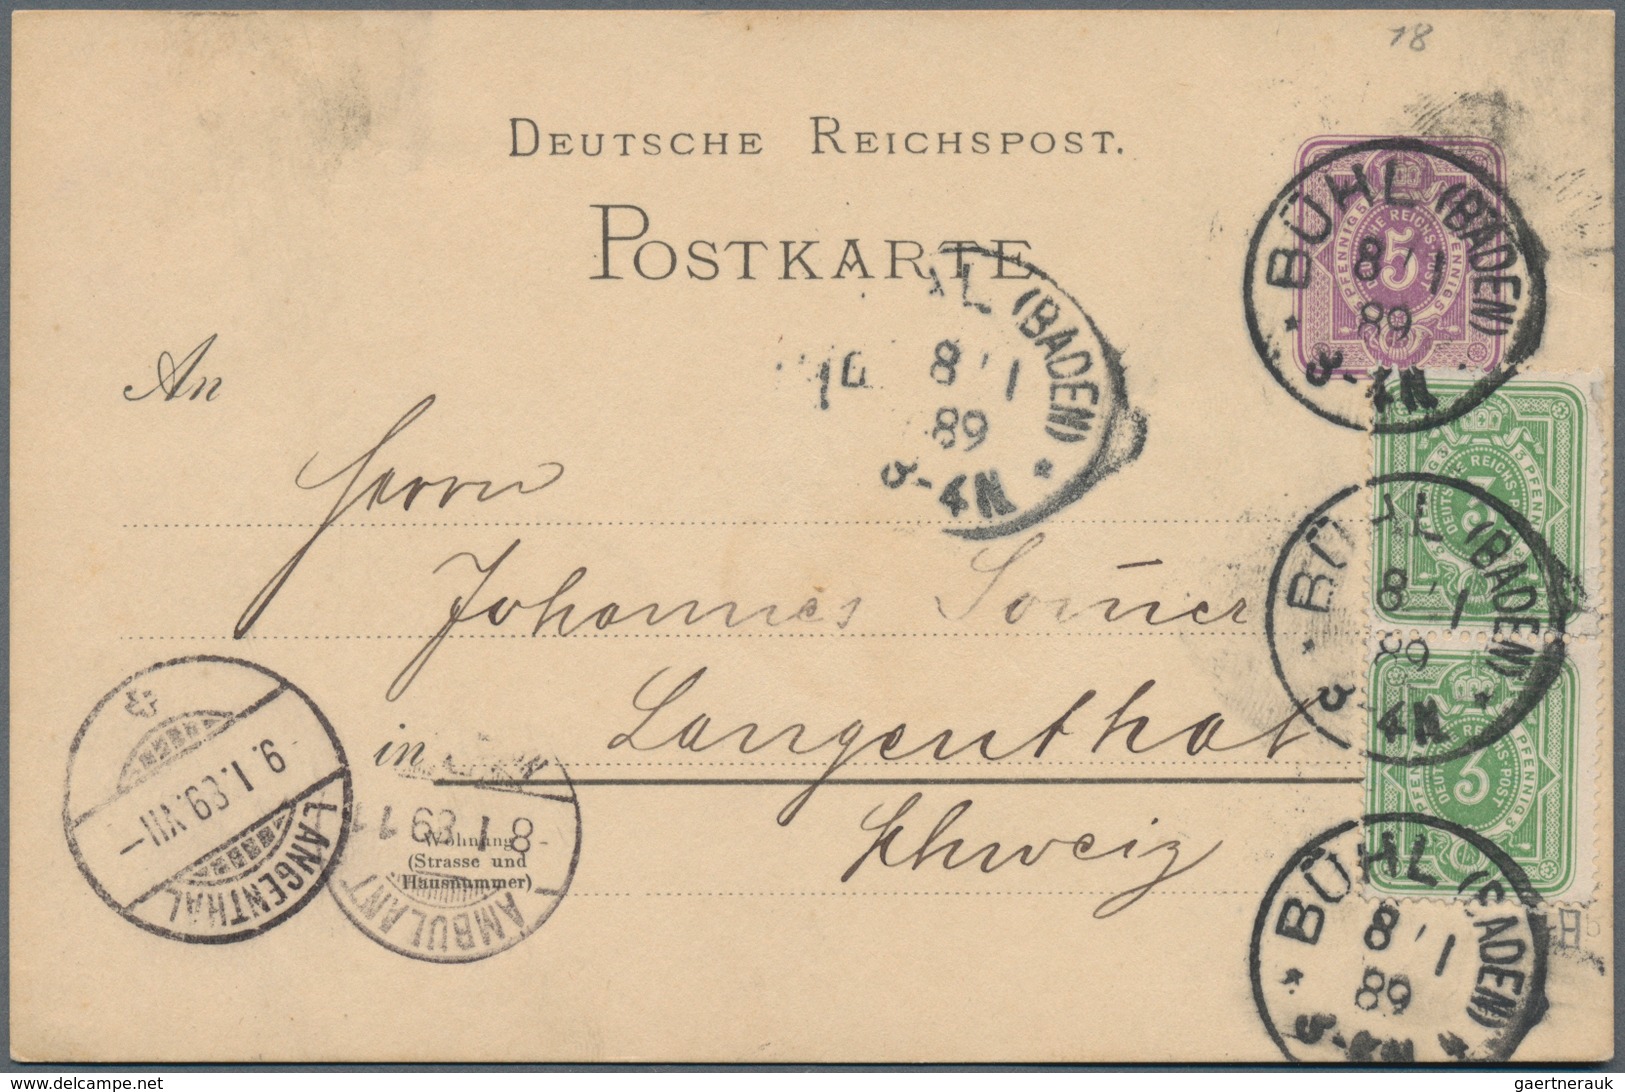 Deutsches Reich: 1875/1900, Sammlungspartie von ca. 210 Briefen, Karten und Ganzsachen mit Frankatur